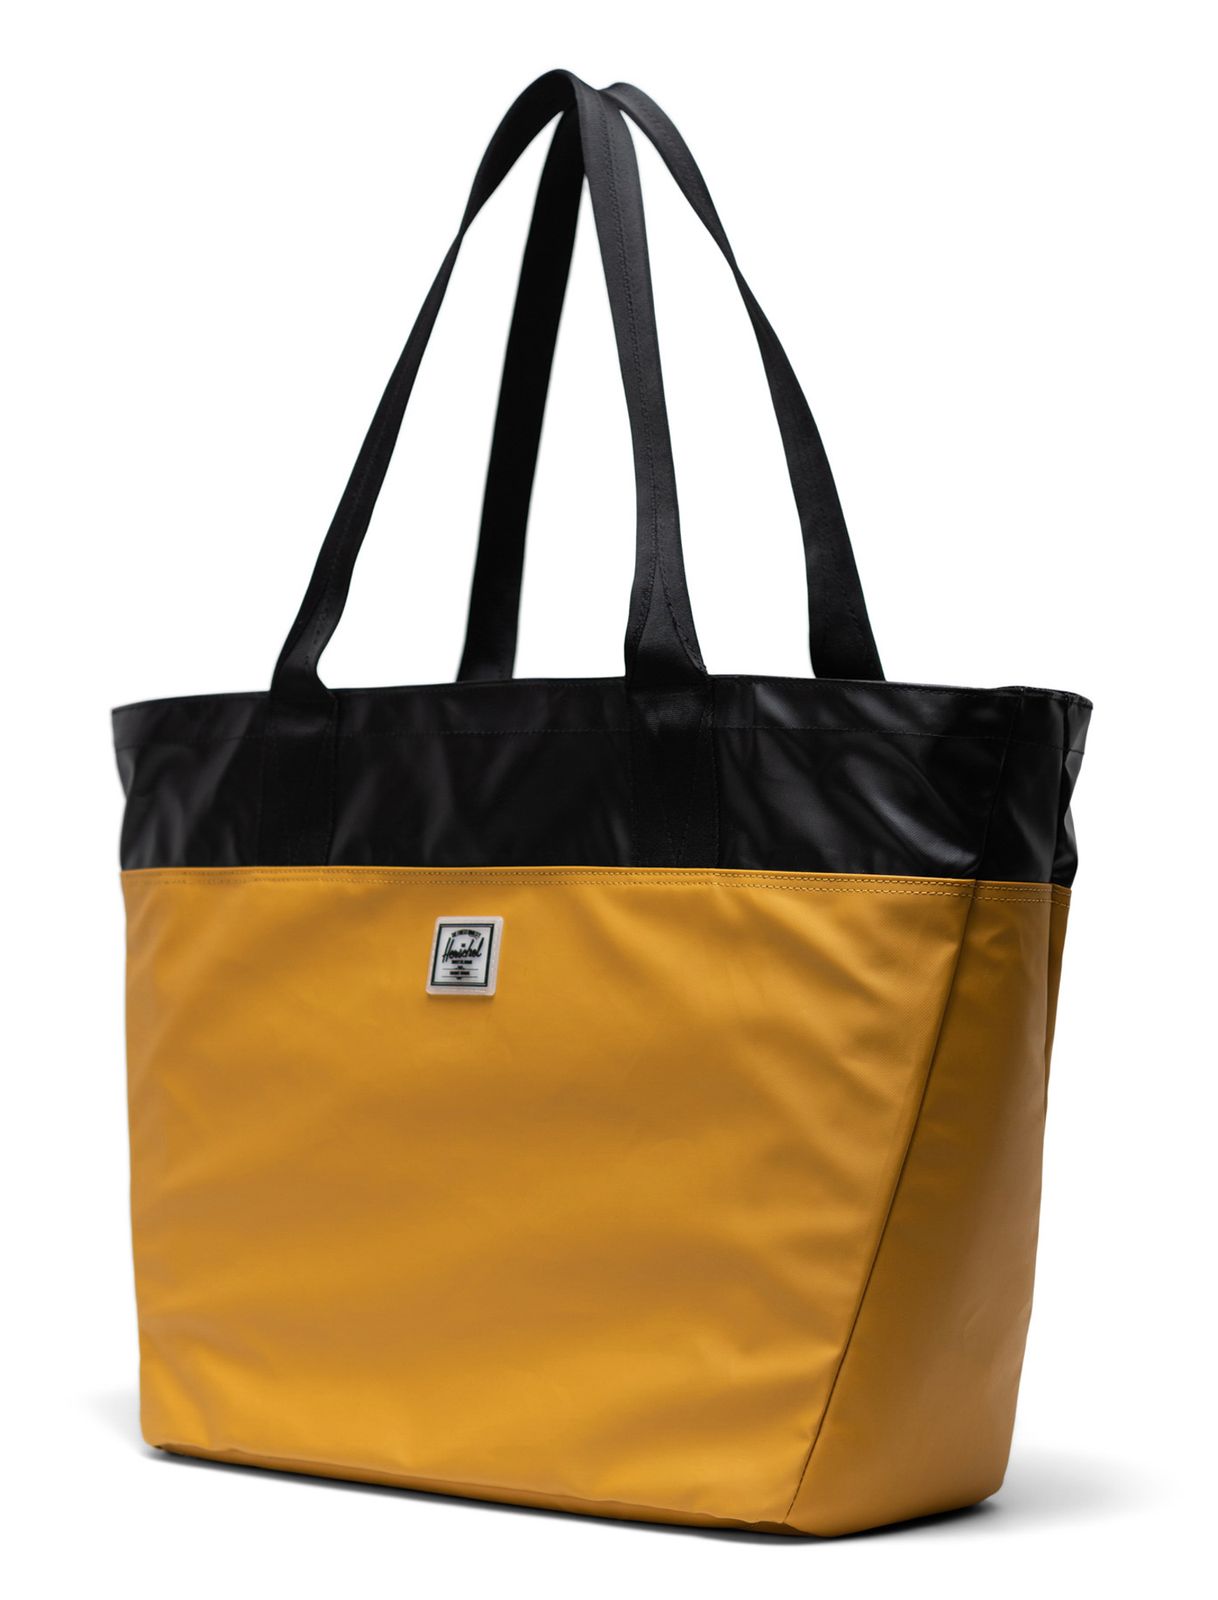 Herschel shopper bag Alexander Zip Tote Harvest Gold | Buy bags, purses ...